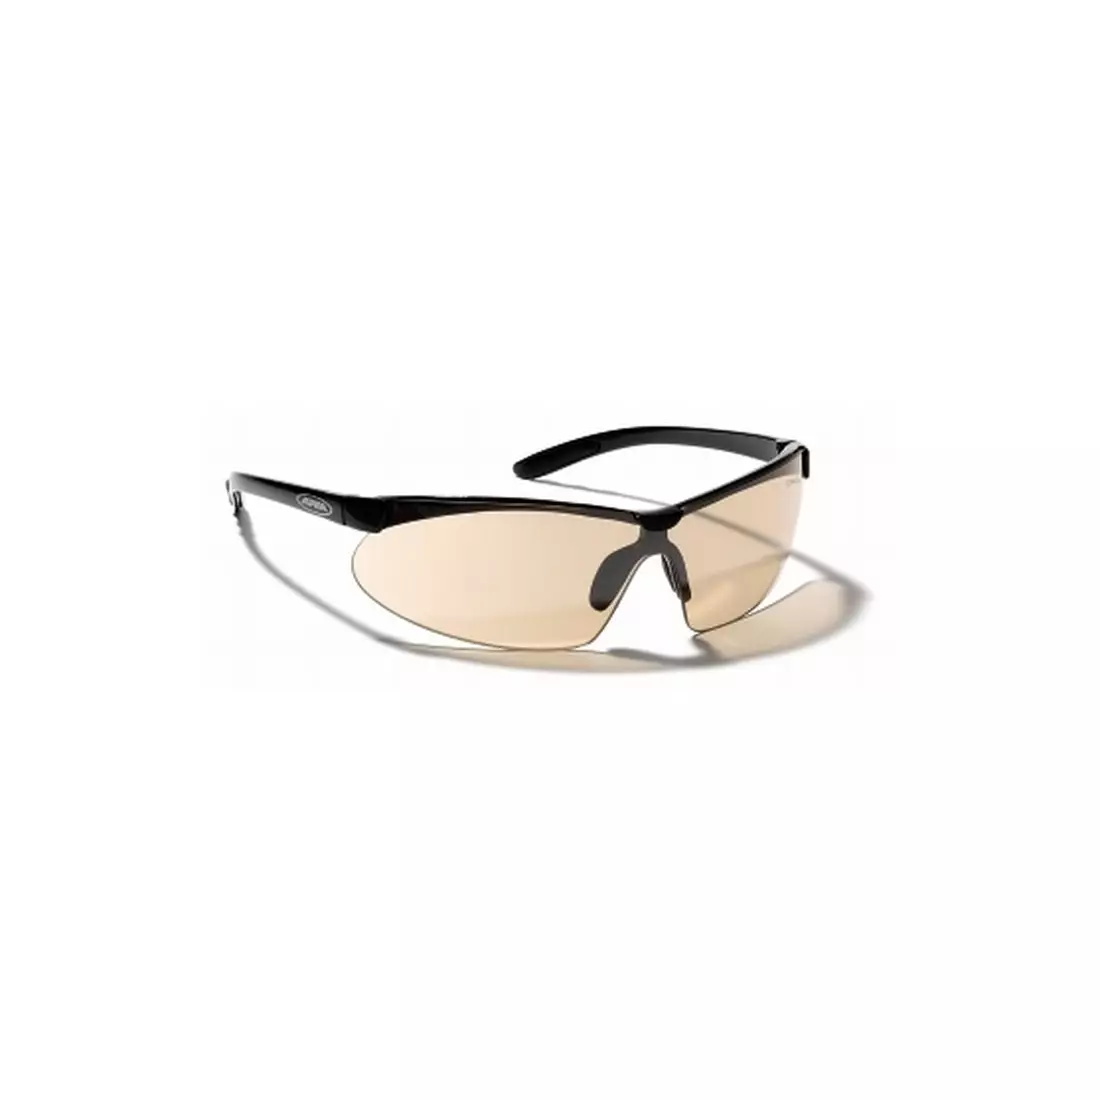 Sportovní brýle ALPINA DRIFT - barva: Černá